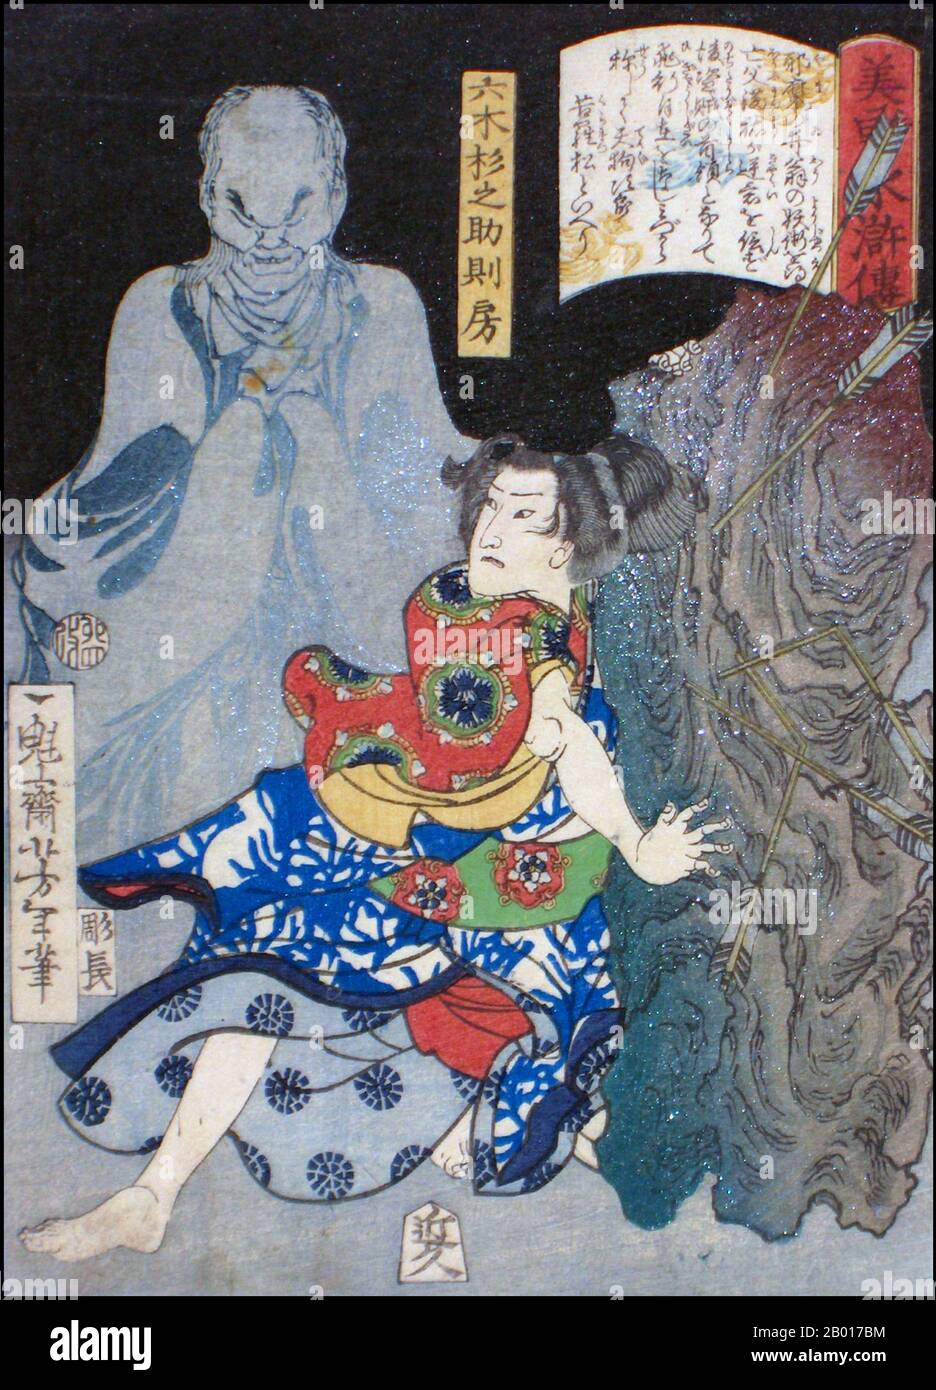 Giappone: 'Mutsuki Suginosuke Norifusa con un fantasma'. Ukiyo-e stampa di blocco di legno dalla serie 'Eroi del margine d'acqua' di Tsukioka Yoshitoshi (1839 - 9 giugno 1892), 1867. Tsukioka Yoshitoshi, anche chiamato Taiso Yoshitoshi, era un artista giapponese. È ampiamente riconosciuto come l'ultimo grande maestro di Ukiyo-e, un tipo di stampa giapponese a blocchi di legno. È inoltre considerato uno dei più grandi innovatori della forma. La sua carriera ha abbracciato due epoche – gli ultimi anni del Giappone feudale, e i primi anni del Giappone moderno dopo la Restaurazione Meiji. Foto Stock